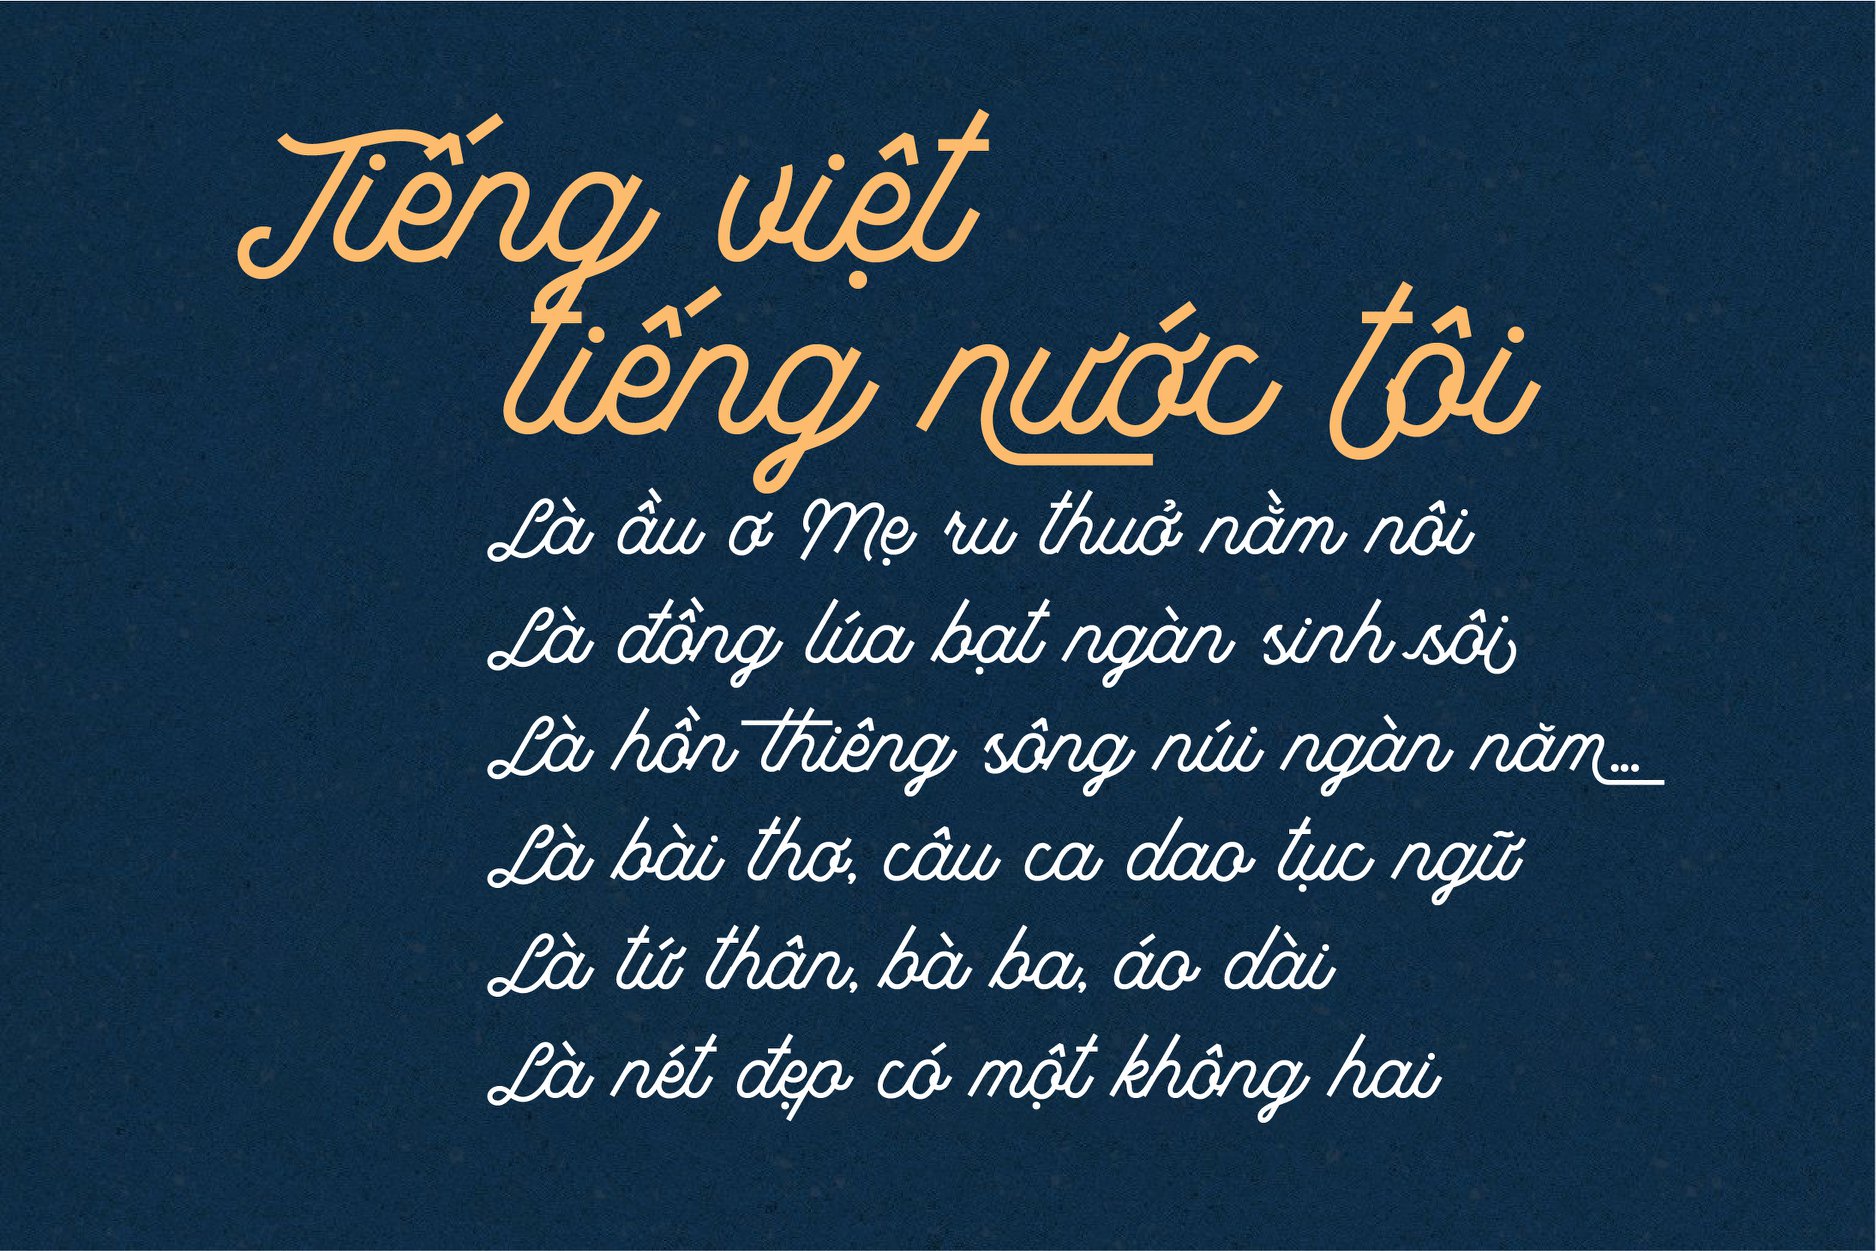 Tổng hợp font chữ viết tay tiếng Việt độc đáo 2024:
Bạn đã bao giờ khám phá các font chữ viết tay tiếng Việt độc đáo và mới lạ chưa? Năm 2024, chúng tôi tự hào mang đến cho bạn bộ font chữ viết tay tiếng Việt độc đáo nhất từ trước đến nay. Với nhiều kiểu dáng và phong cách khác nhau, chắc chắn sẽ giúp nâng cao sự sáng tạo và tạo ra những tác phẩm độc đáo cho bạn.